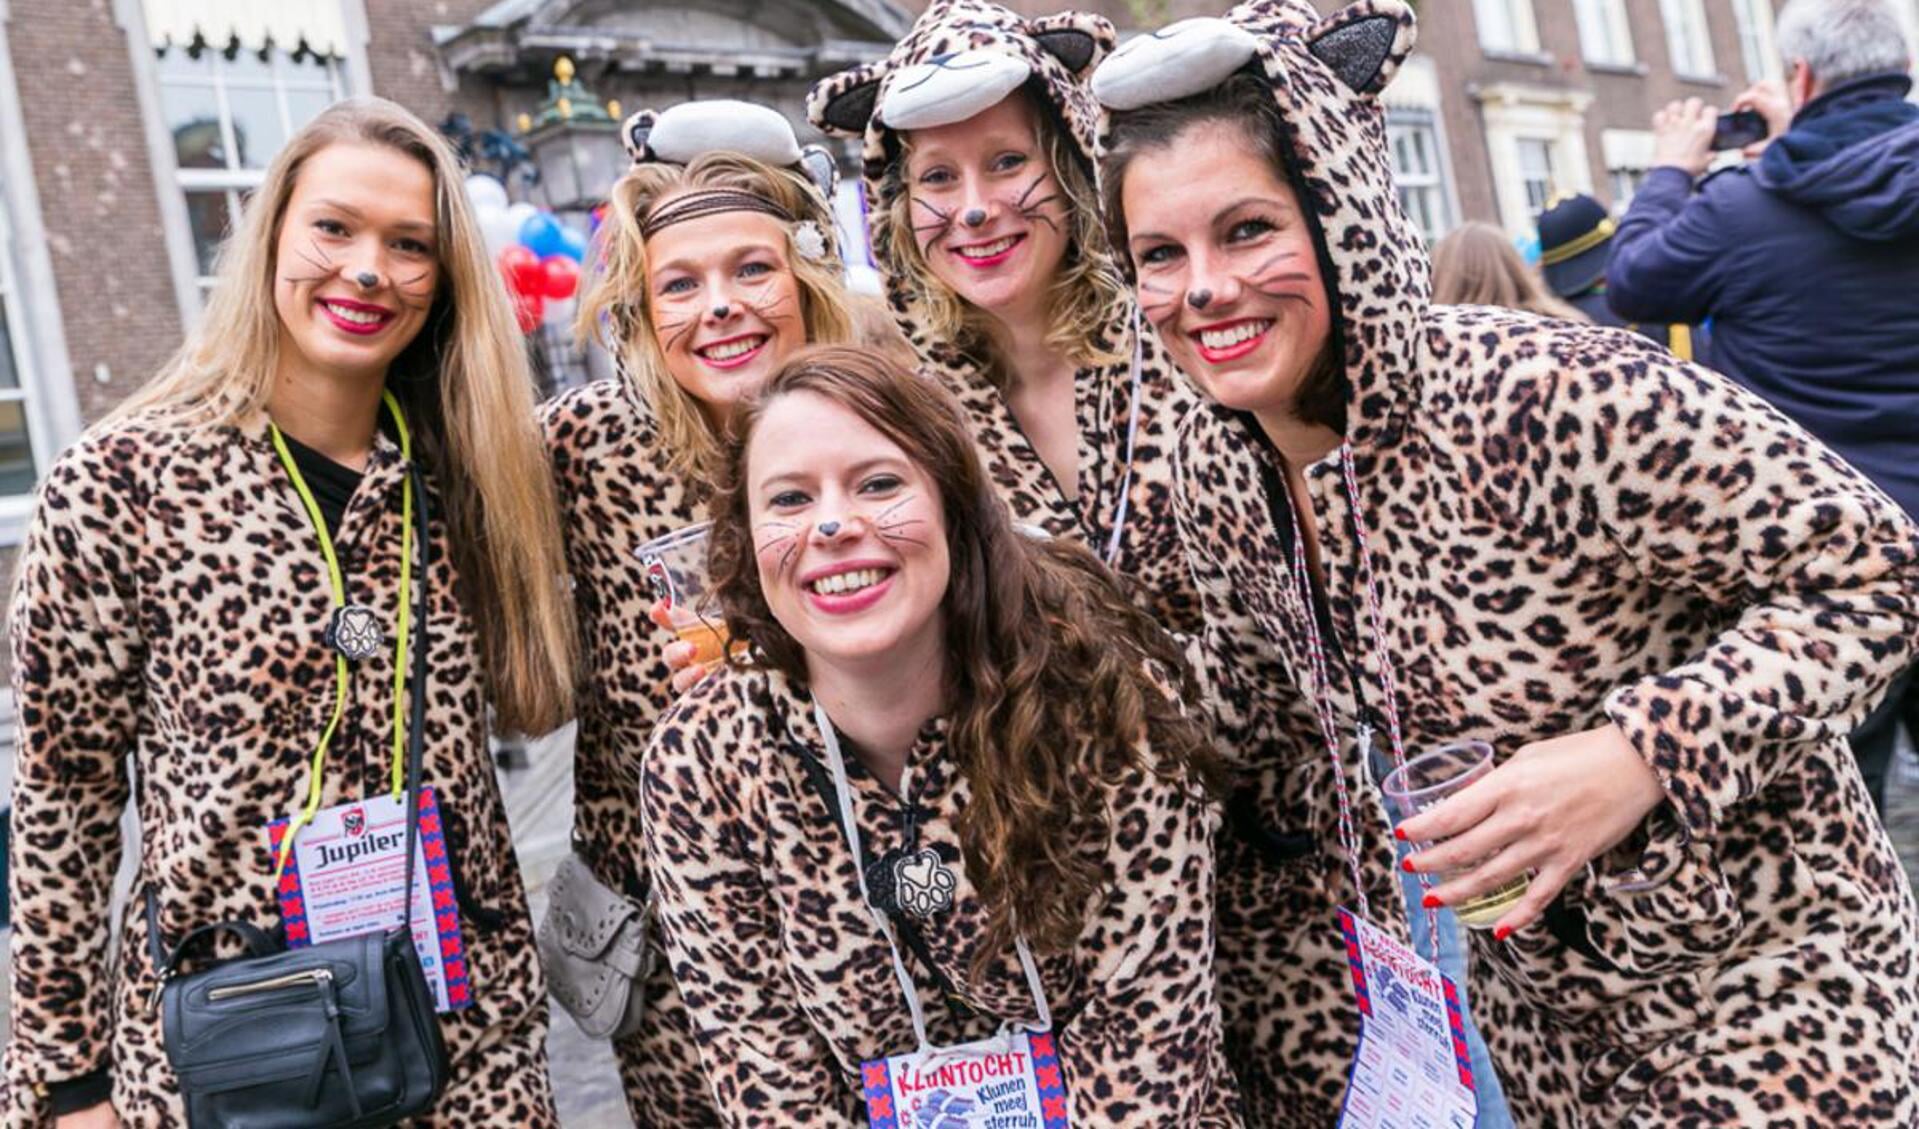 telex Pigment Rot Stoere en strakke pakjes populair bij vrouwen met carnaval' | BredaVandaag  - Hét nieuws uit Breda